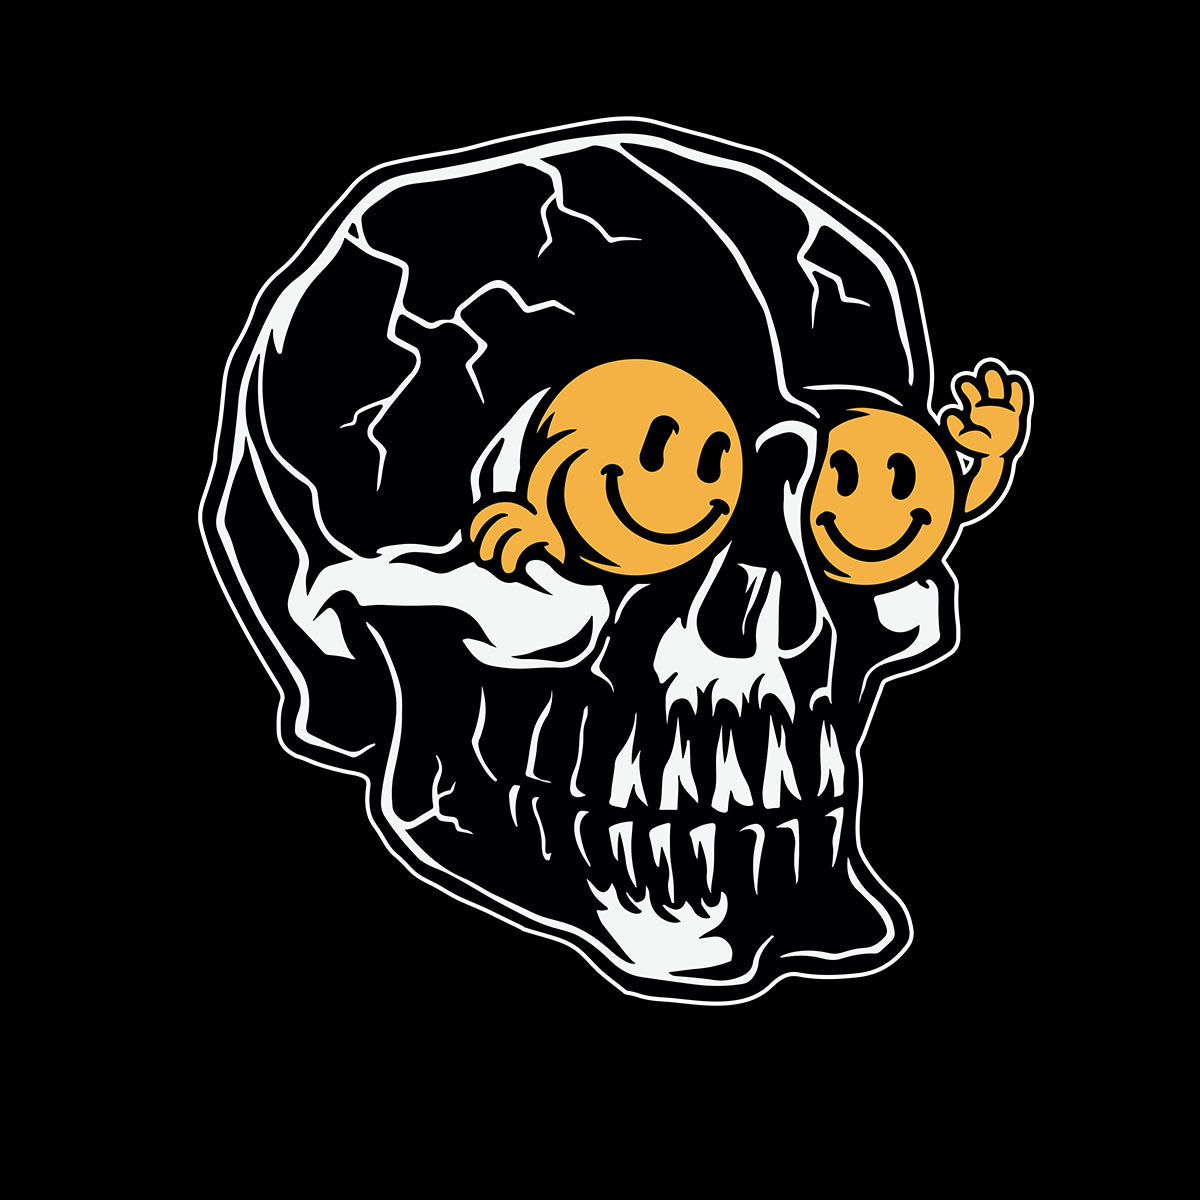 Skull T-Shirt Gothic Skeleton Funny Novelty Happy face Kid's Tee - Kuzi Tees